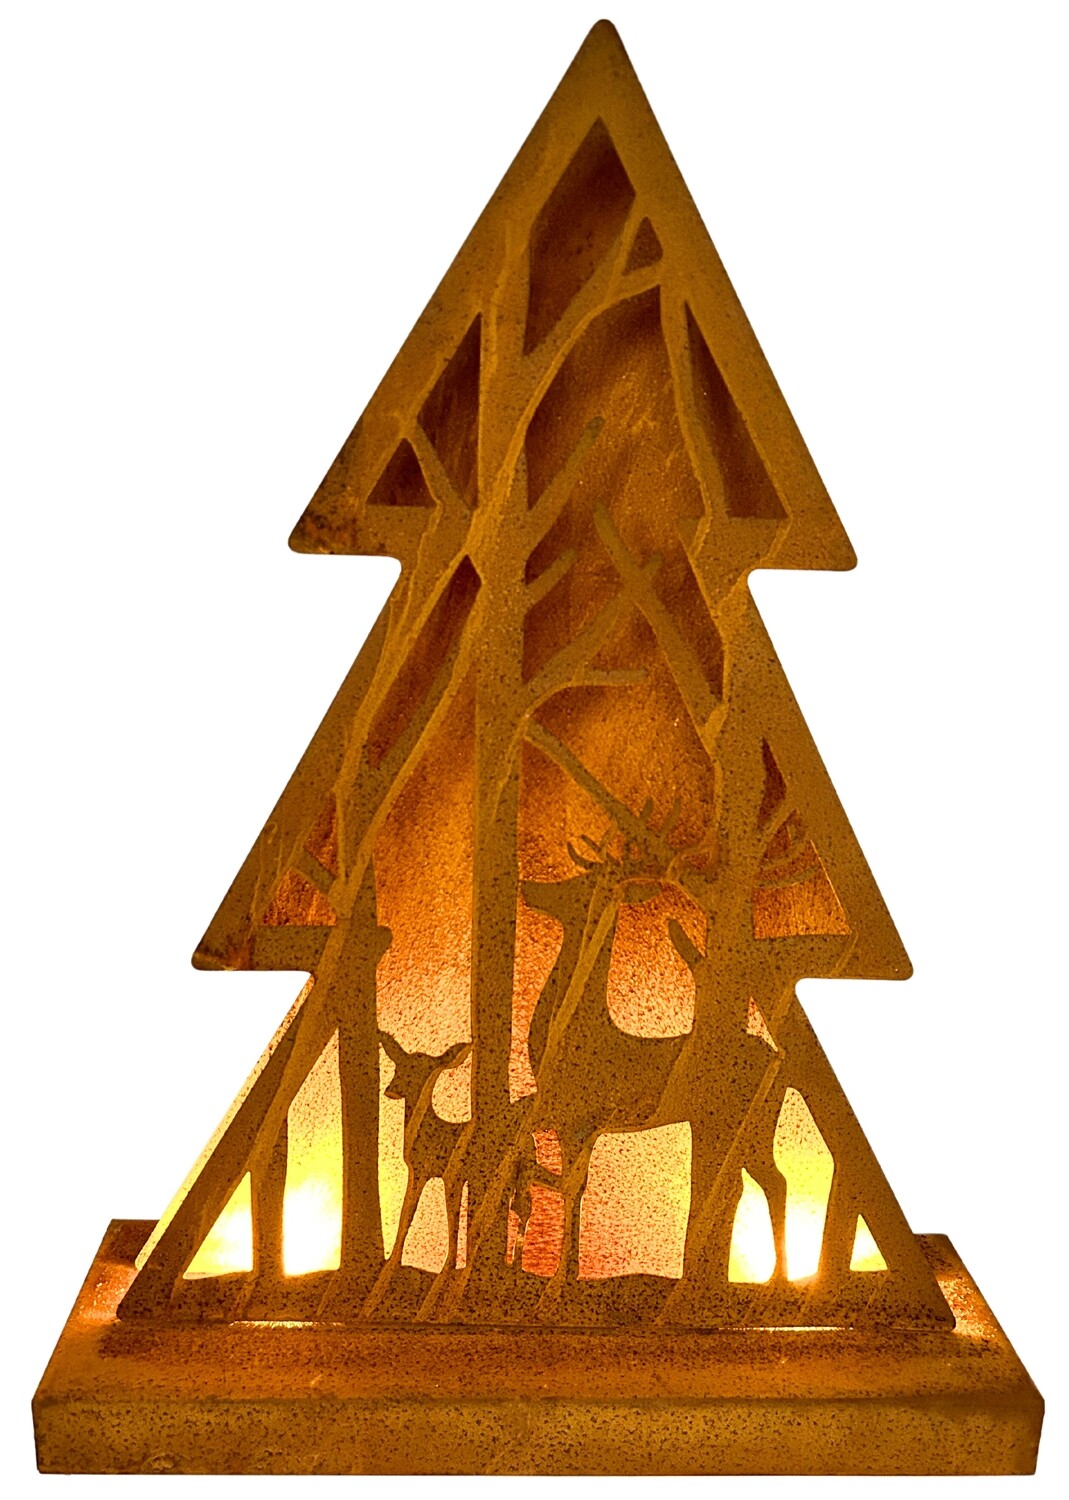 Weihnachtliche Dekoration: Leuchtender Tannenbaum aus Metall (38 cm H)
Verleihen Sie Ihrem Zuhause mit dieser bezaubernden Dekofigur eines Tannenbaums aus Metall mit warmweißen LEDs eine festliche Atmosphäre und zelebrieren Sie die Weihnachtszeit.
Eigenschaften:
Stimmungsvolles Licht: Die integrierten LEDs tauchen den Tannenbaum in ein sanftes, warmweißes Licht und schaffen eine gemütliche Atmosphäre.
Batteriebetrieben: Die Dekofigur ist batteriebetrieben und daher flexibel einsetzbar, ohne auf Steckdosen in der Nähe angewiesen zu sein.
Hochwertiges Material: Der Tannenbaum ist aus robustem Metall gefertigt und daher langlebig und pflegeleicht.
Perfekte Dekoration: Die Dekofigur eignet sich hervorragend für die Dekoration von Fensterbänken, Regalen, Tischen oder als stimmungsvolle Ergänzung Ihrer Weihnachtsbeleuchtung.
Maße: Tiefe 8 cm, Breite 28 cm, Höhe 38 cm
Material: Metall
Funktionen:
2 warmweiße LEDs
Batteriebetrieben
Marke: abc HOME
Keywords: Dekofigur, Tannenbaum, Weihnachten, LED, warmweiß, batteriebetrieben, stimmungsvoll, festlich, gemütlich, Innenbereich, Fensterbank, Regal, Tisch, Weihnachtsbeleuchtung, Metall, Tiefe 8 cm, Breite 28 cm, Höhe 38 cm, abc HOME